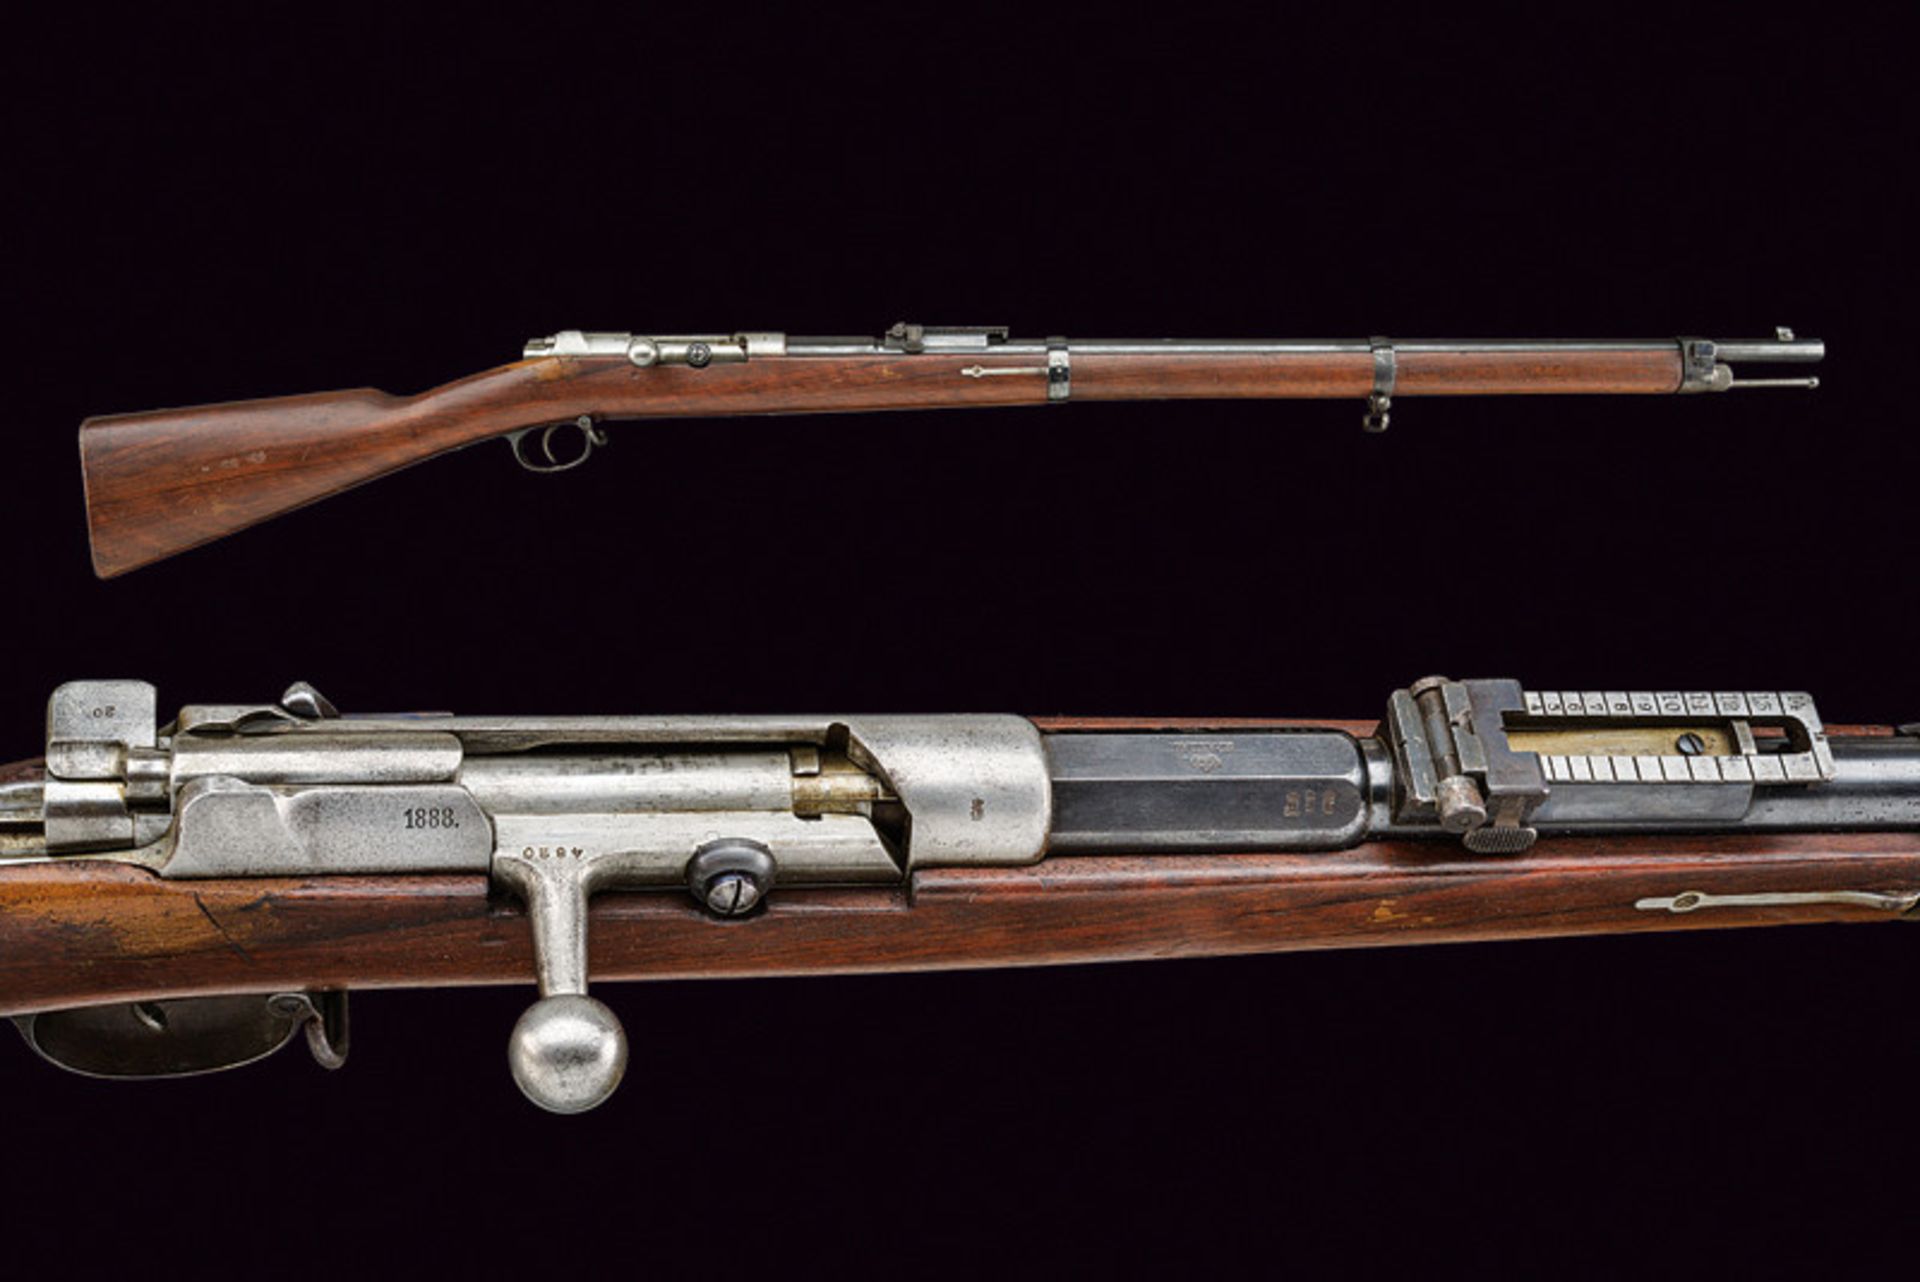 An 1871/84 model breech loading Mauser rifle